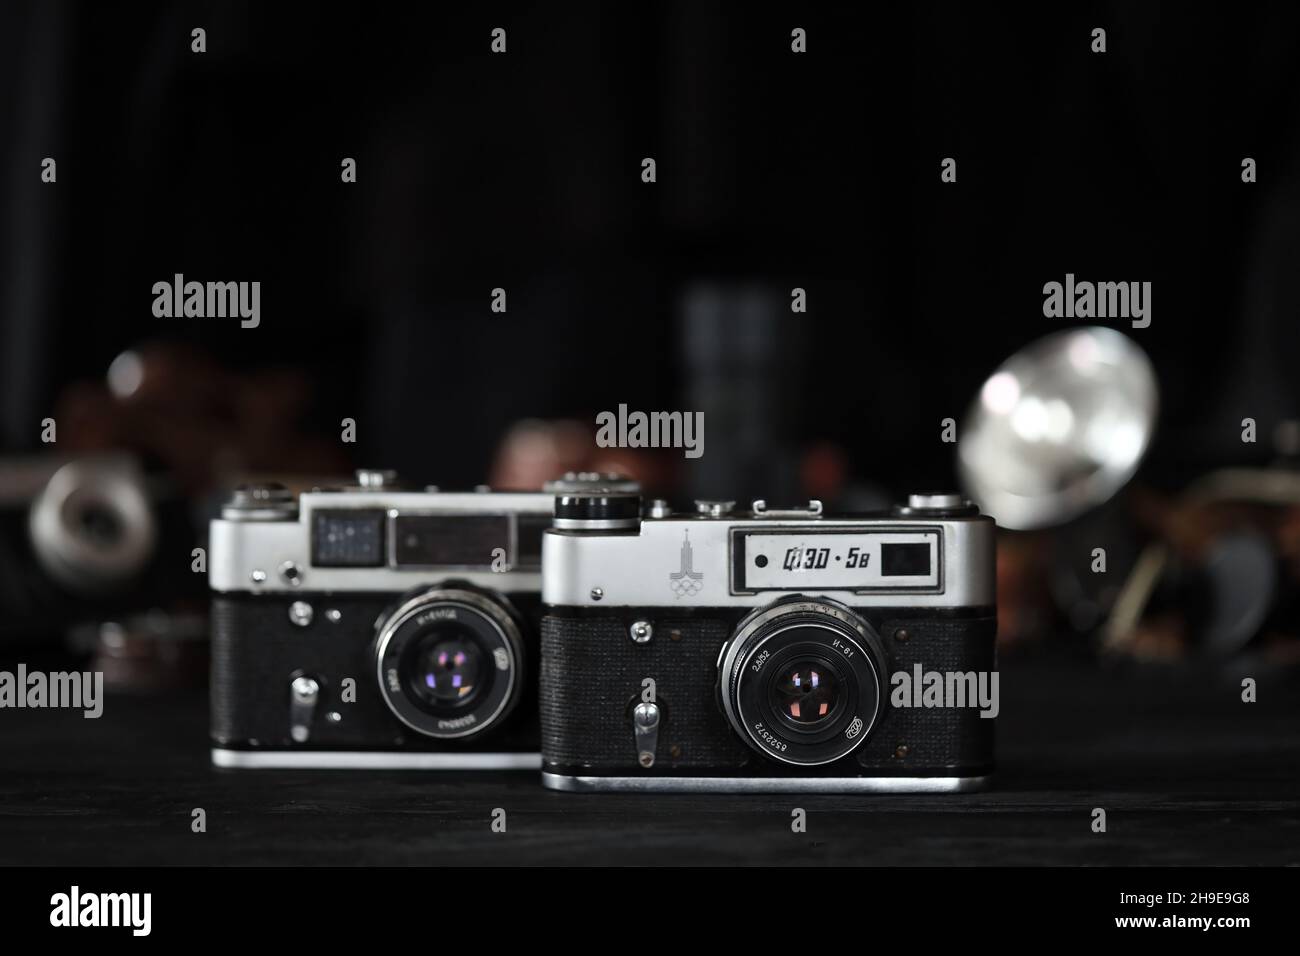 CHARKOW, UKRAINE - 27. APRIL 2021: Fed 4 und 5b Filmkamera und eine weitere alte Retro-Fotoausrüstung auf schwarzem Holztisch in der Dunkelkammer des Fotografen Stockfoto